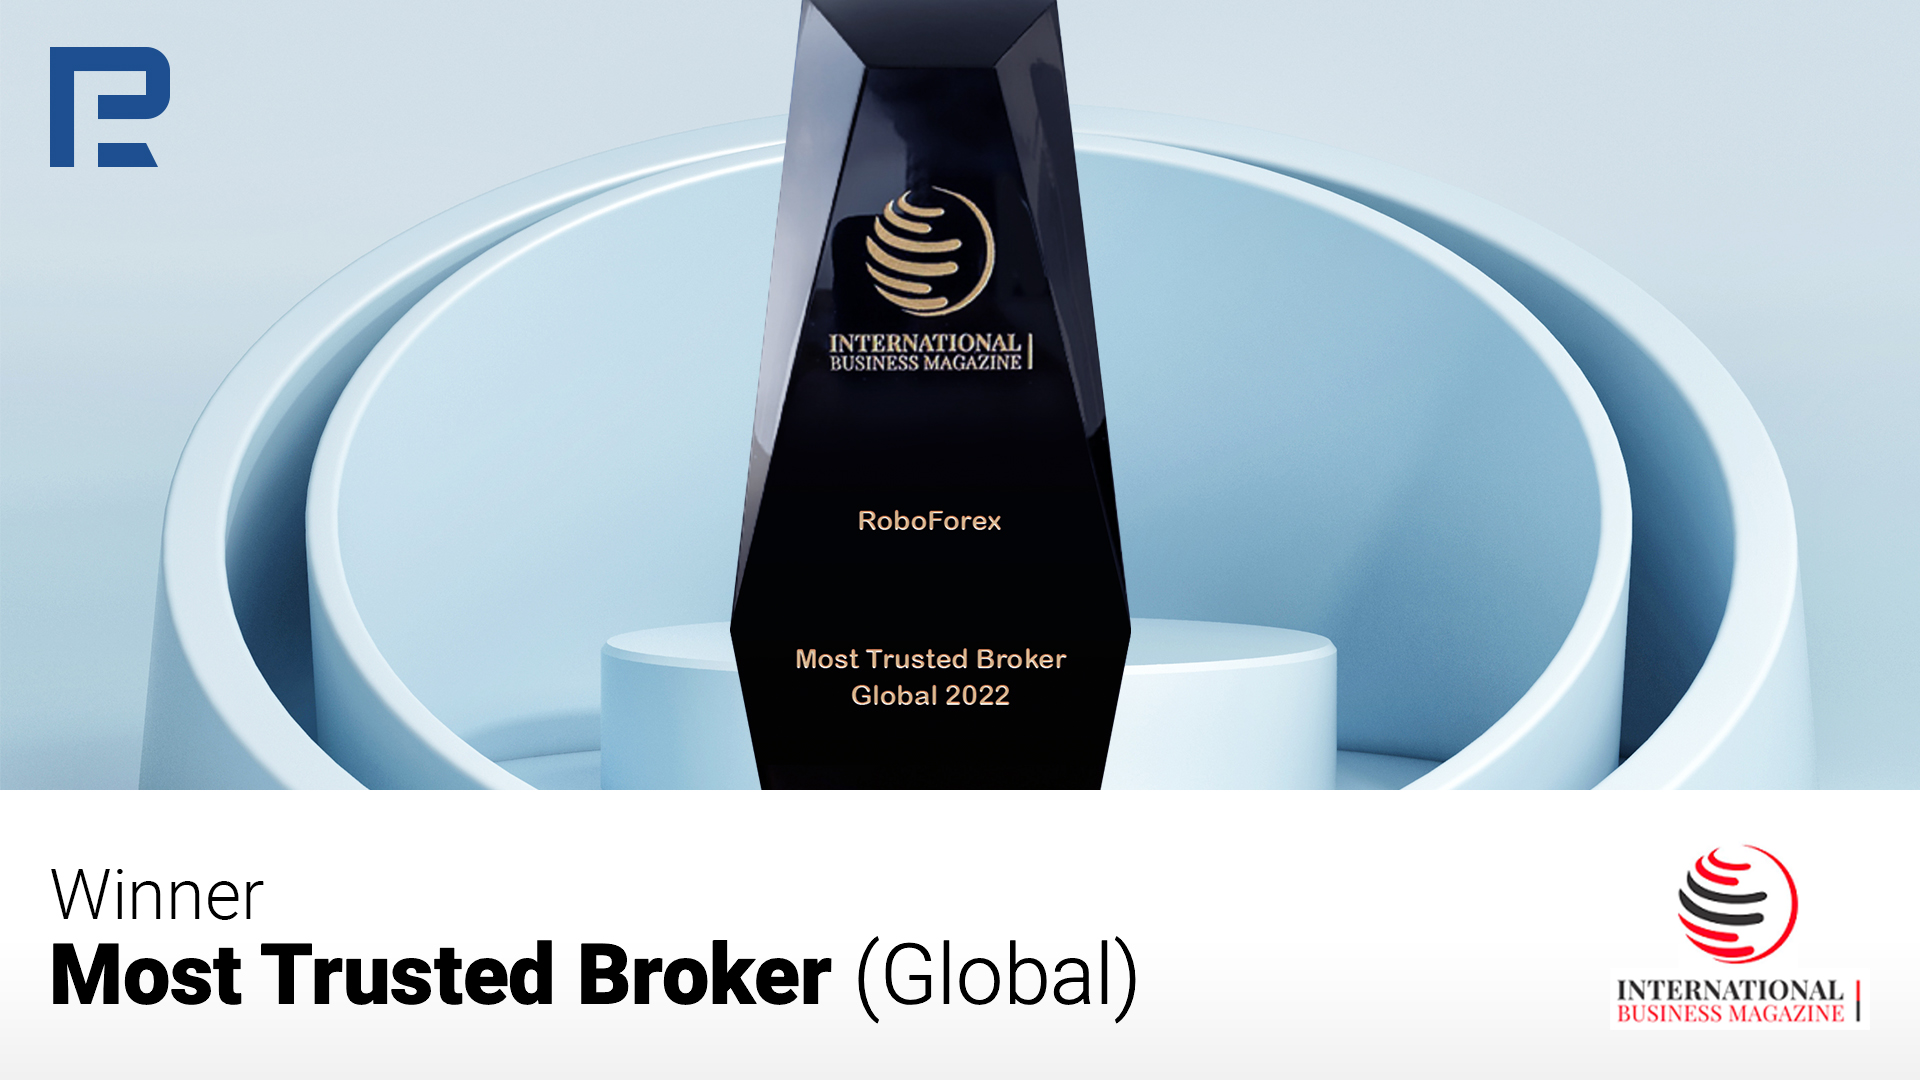 Компания RoboForex, предоставляющая услуги по торговле на мировых финансовых рынках, сообщает о получении награды «Most Trusted Broker (Global)» в рамках мероприятия «International Business Magazine Awards 2022».